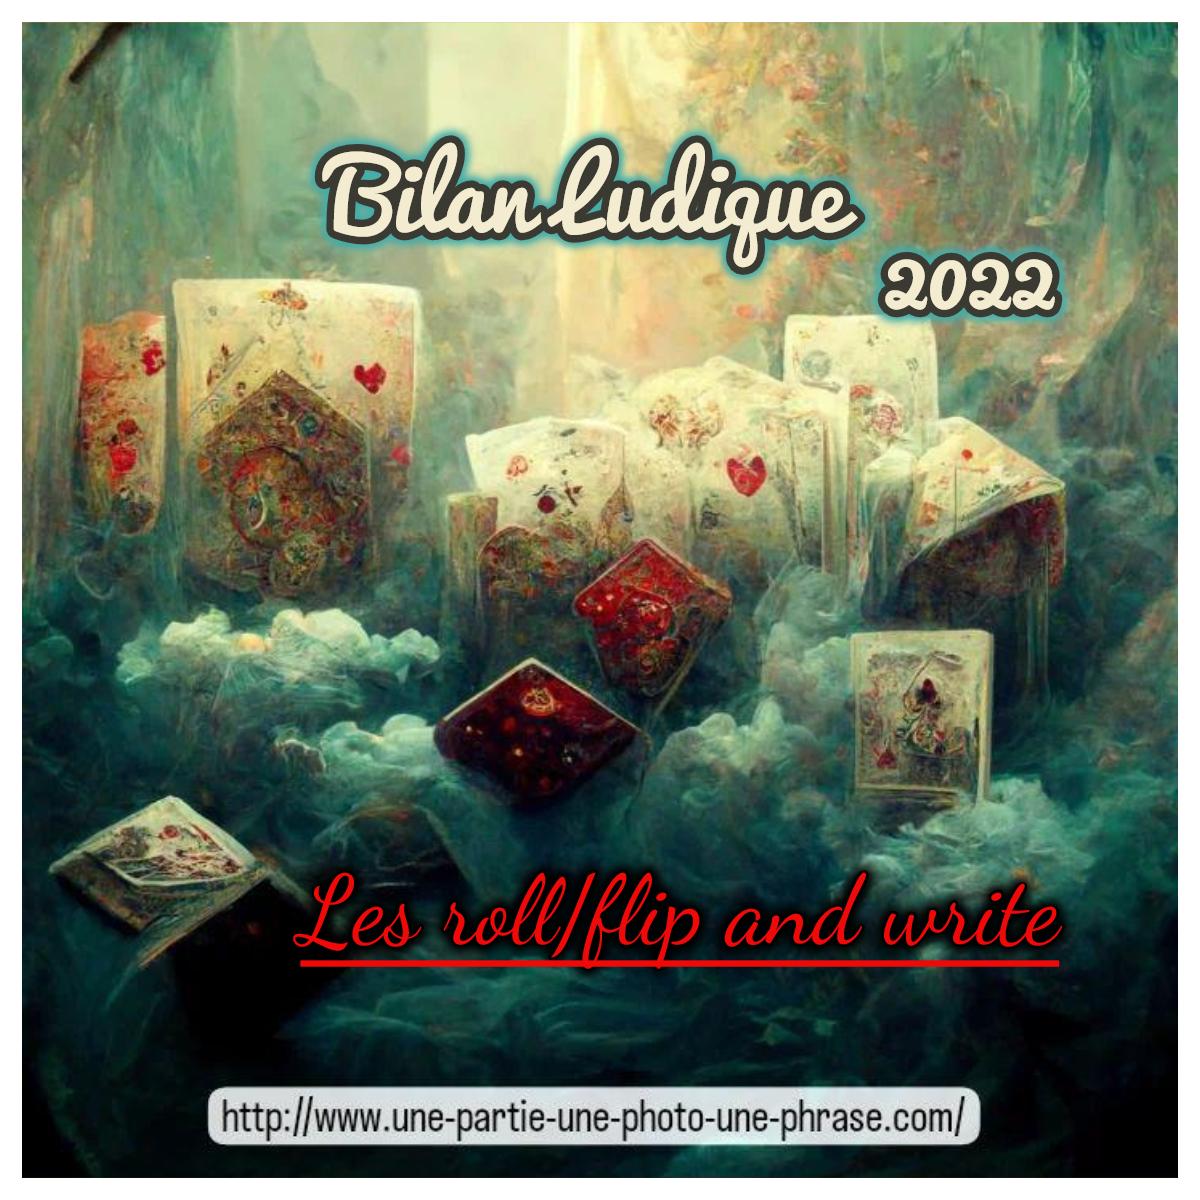 bilan ludique jeux roll flip and write